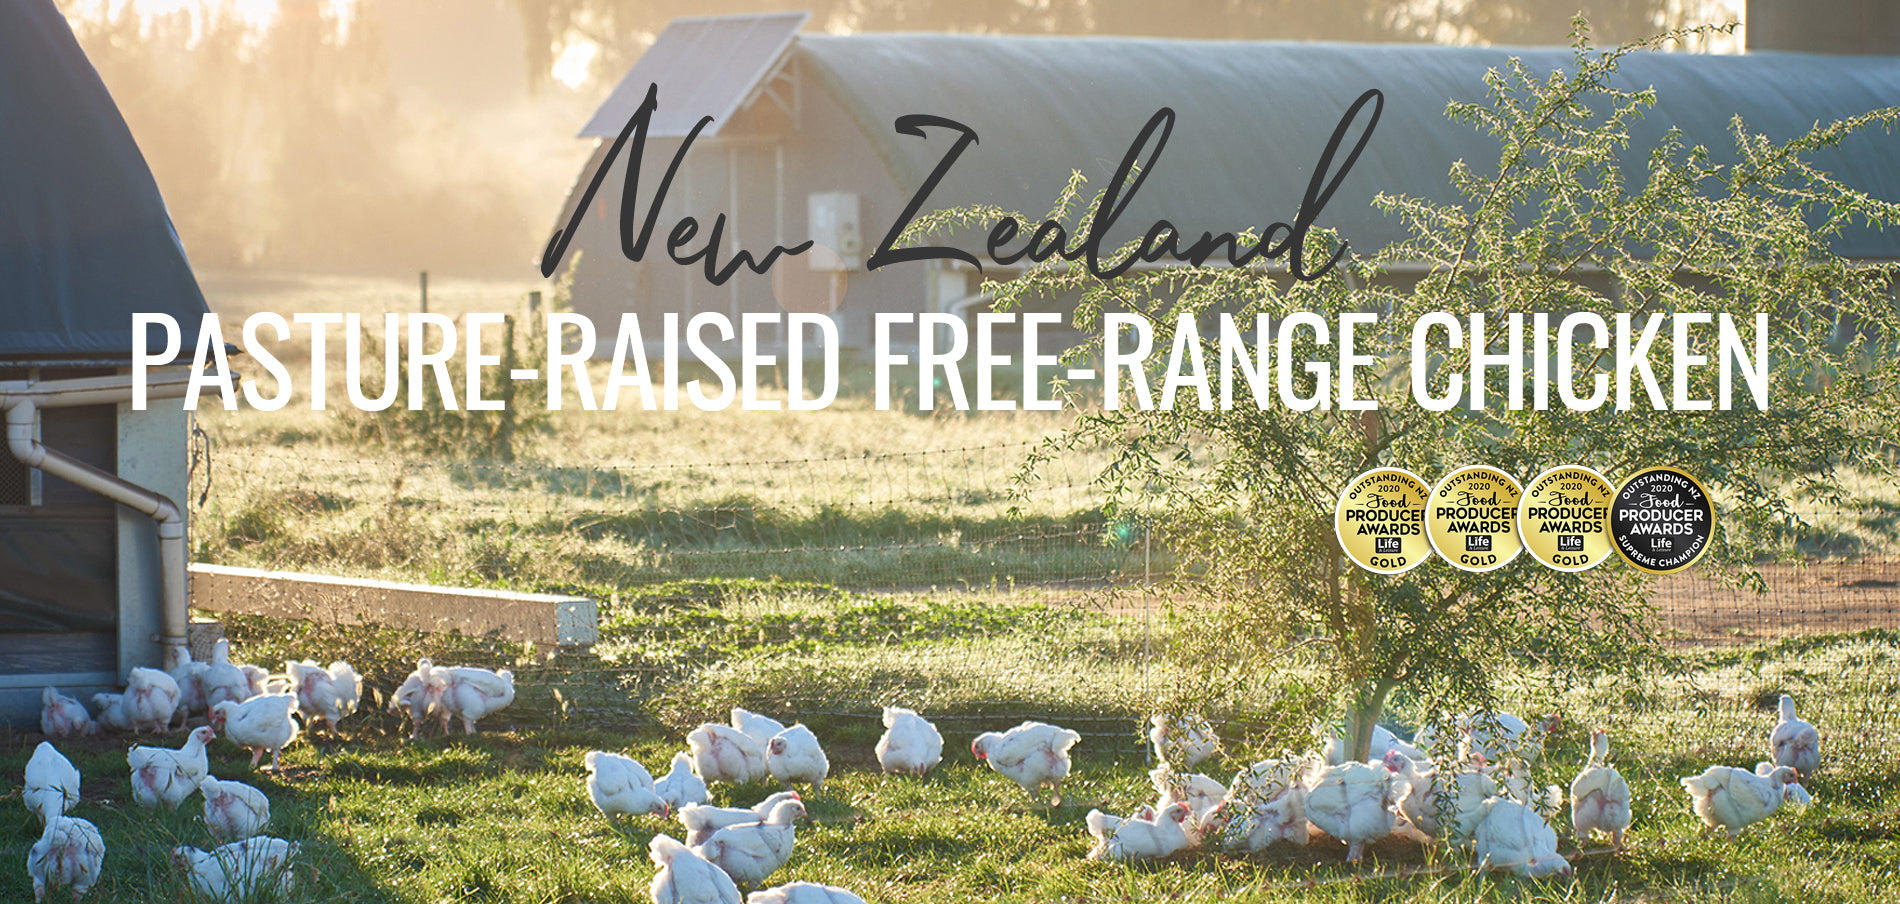 New Zealand Pasture-Raised Free-Range Organic Chicken